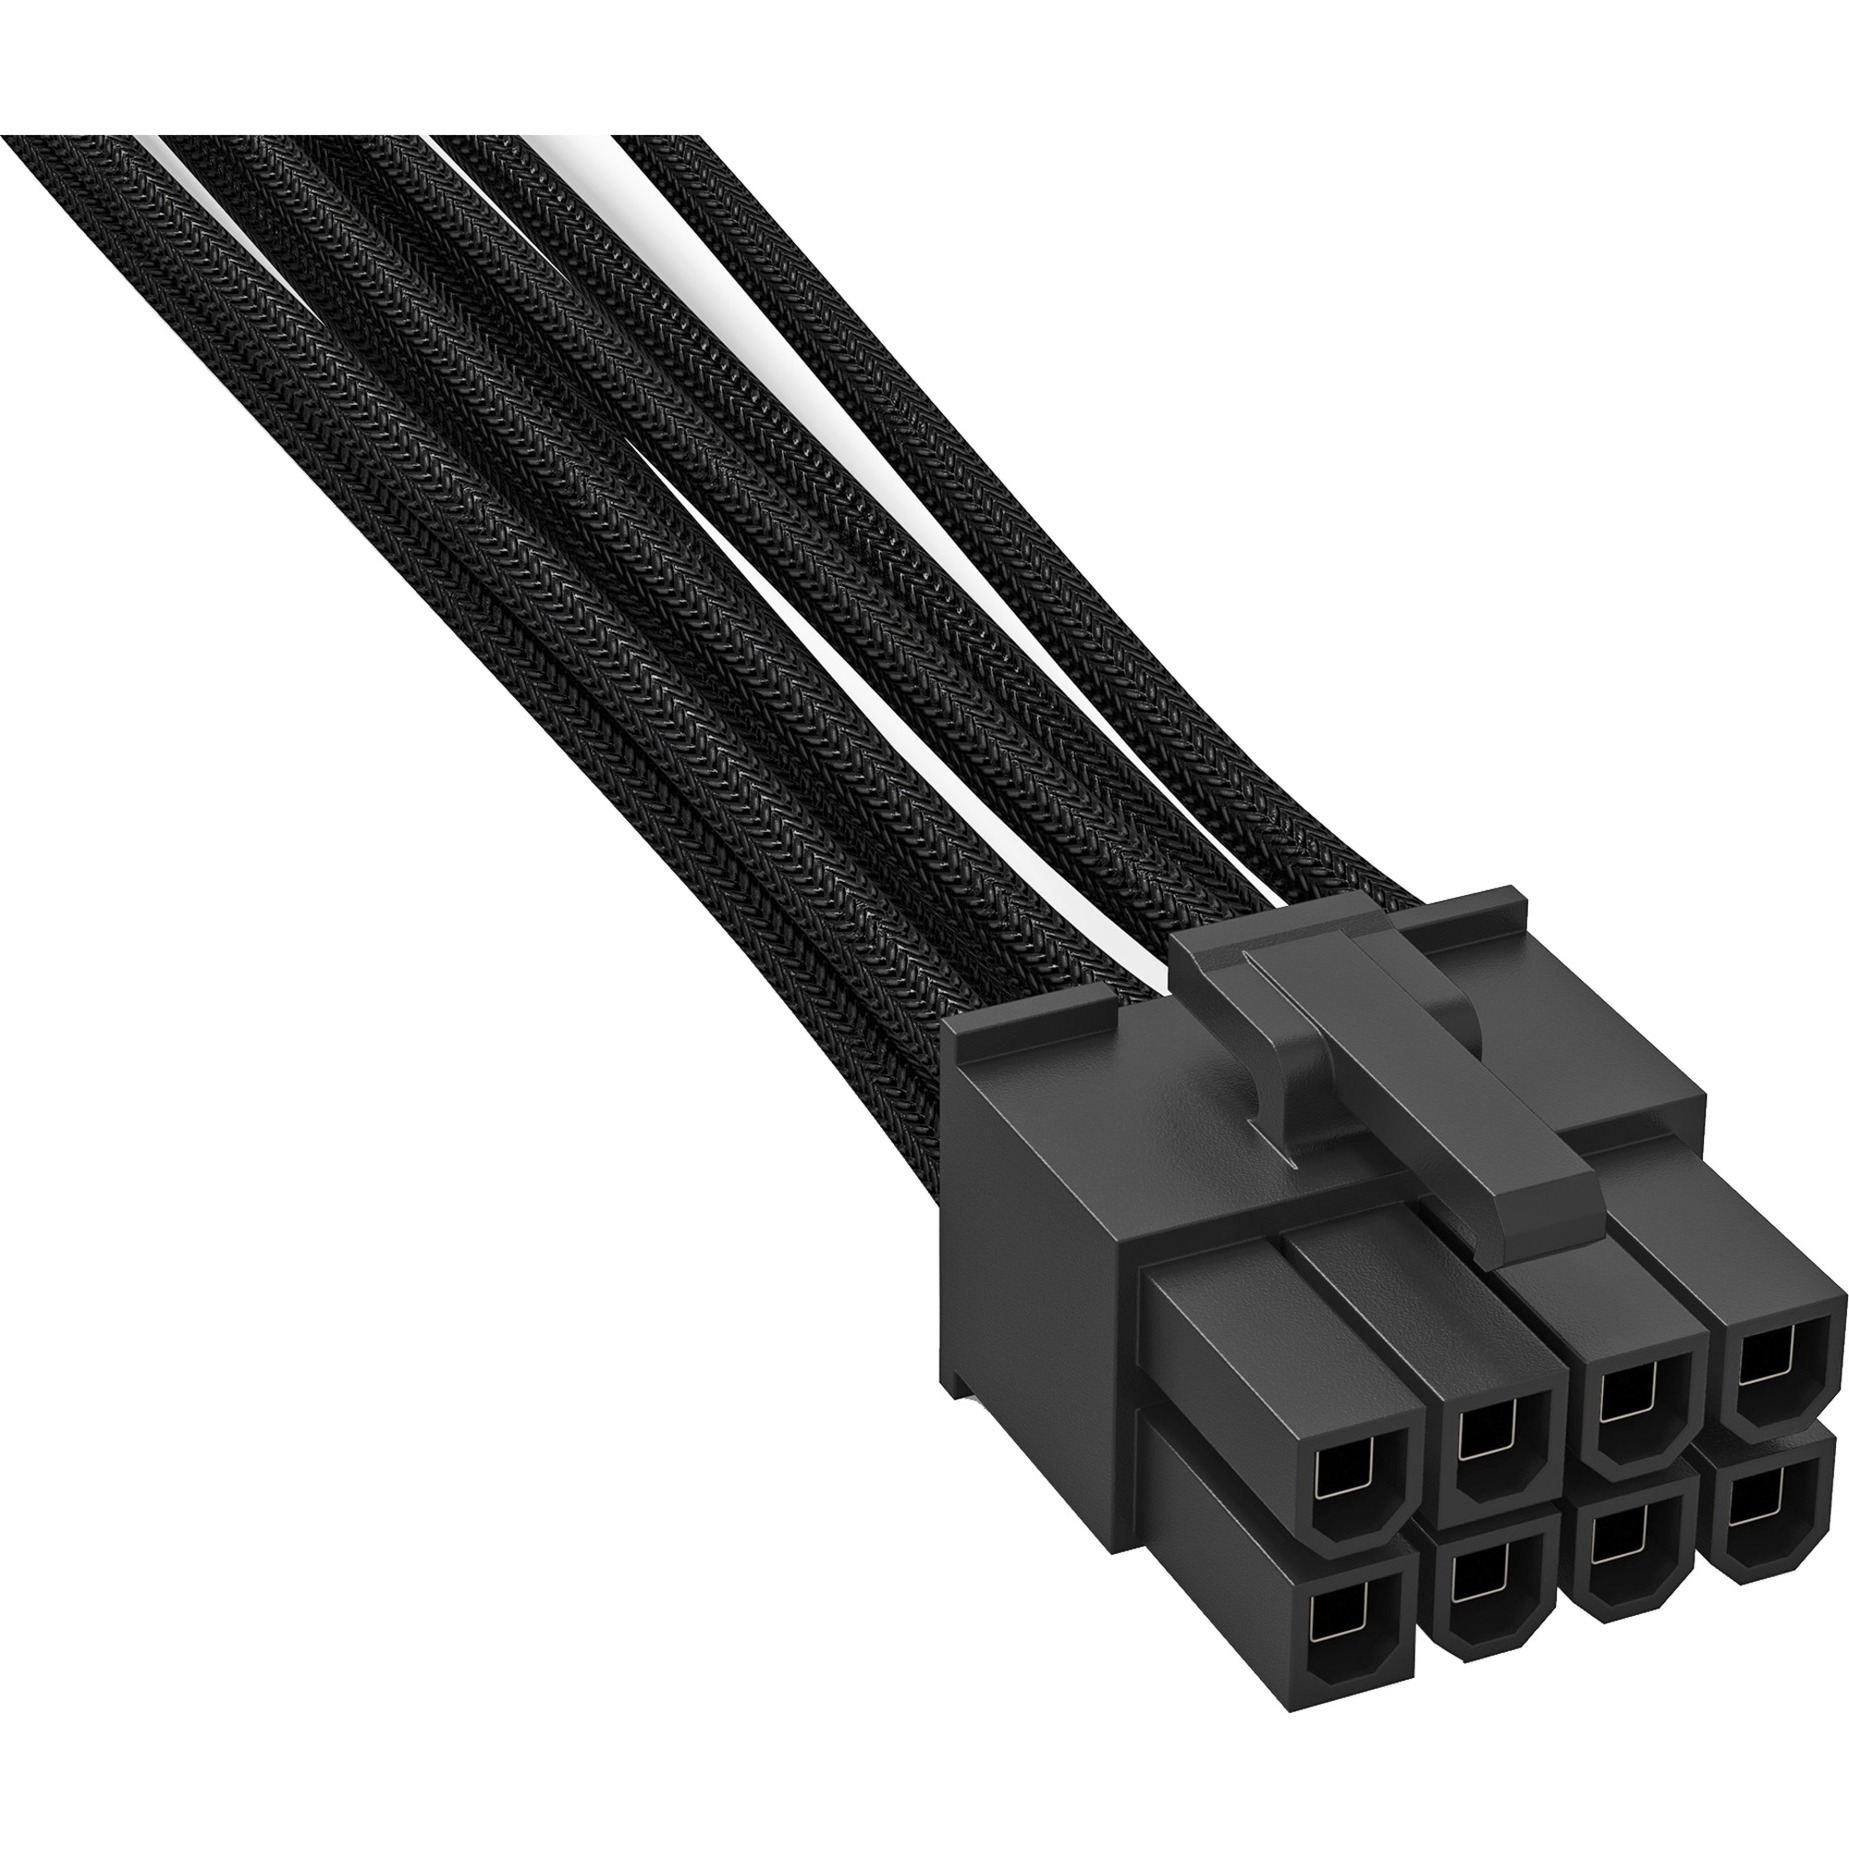 Image of Alternate - CC-7710 1 x P8 700mm, Kabel online einkaufen bei Alternate